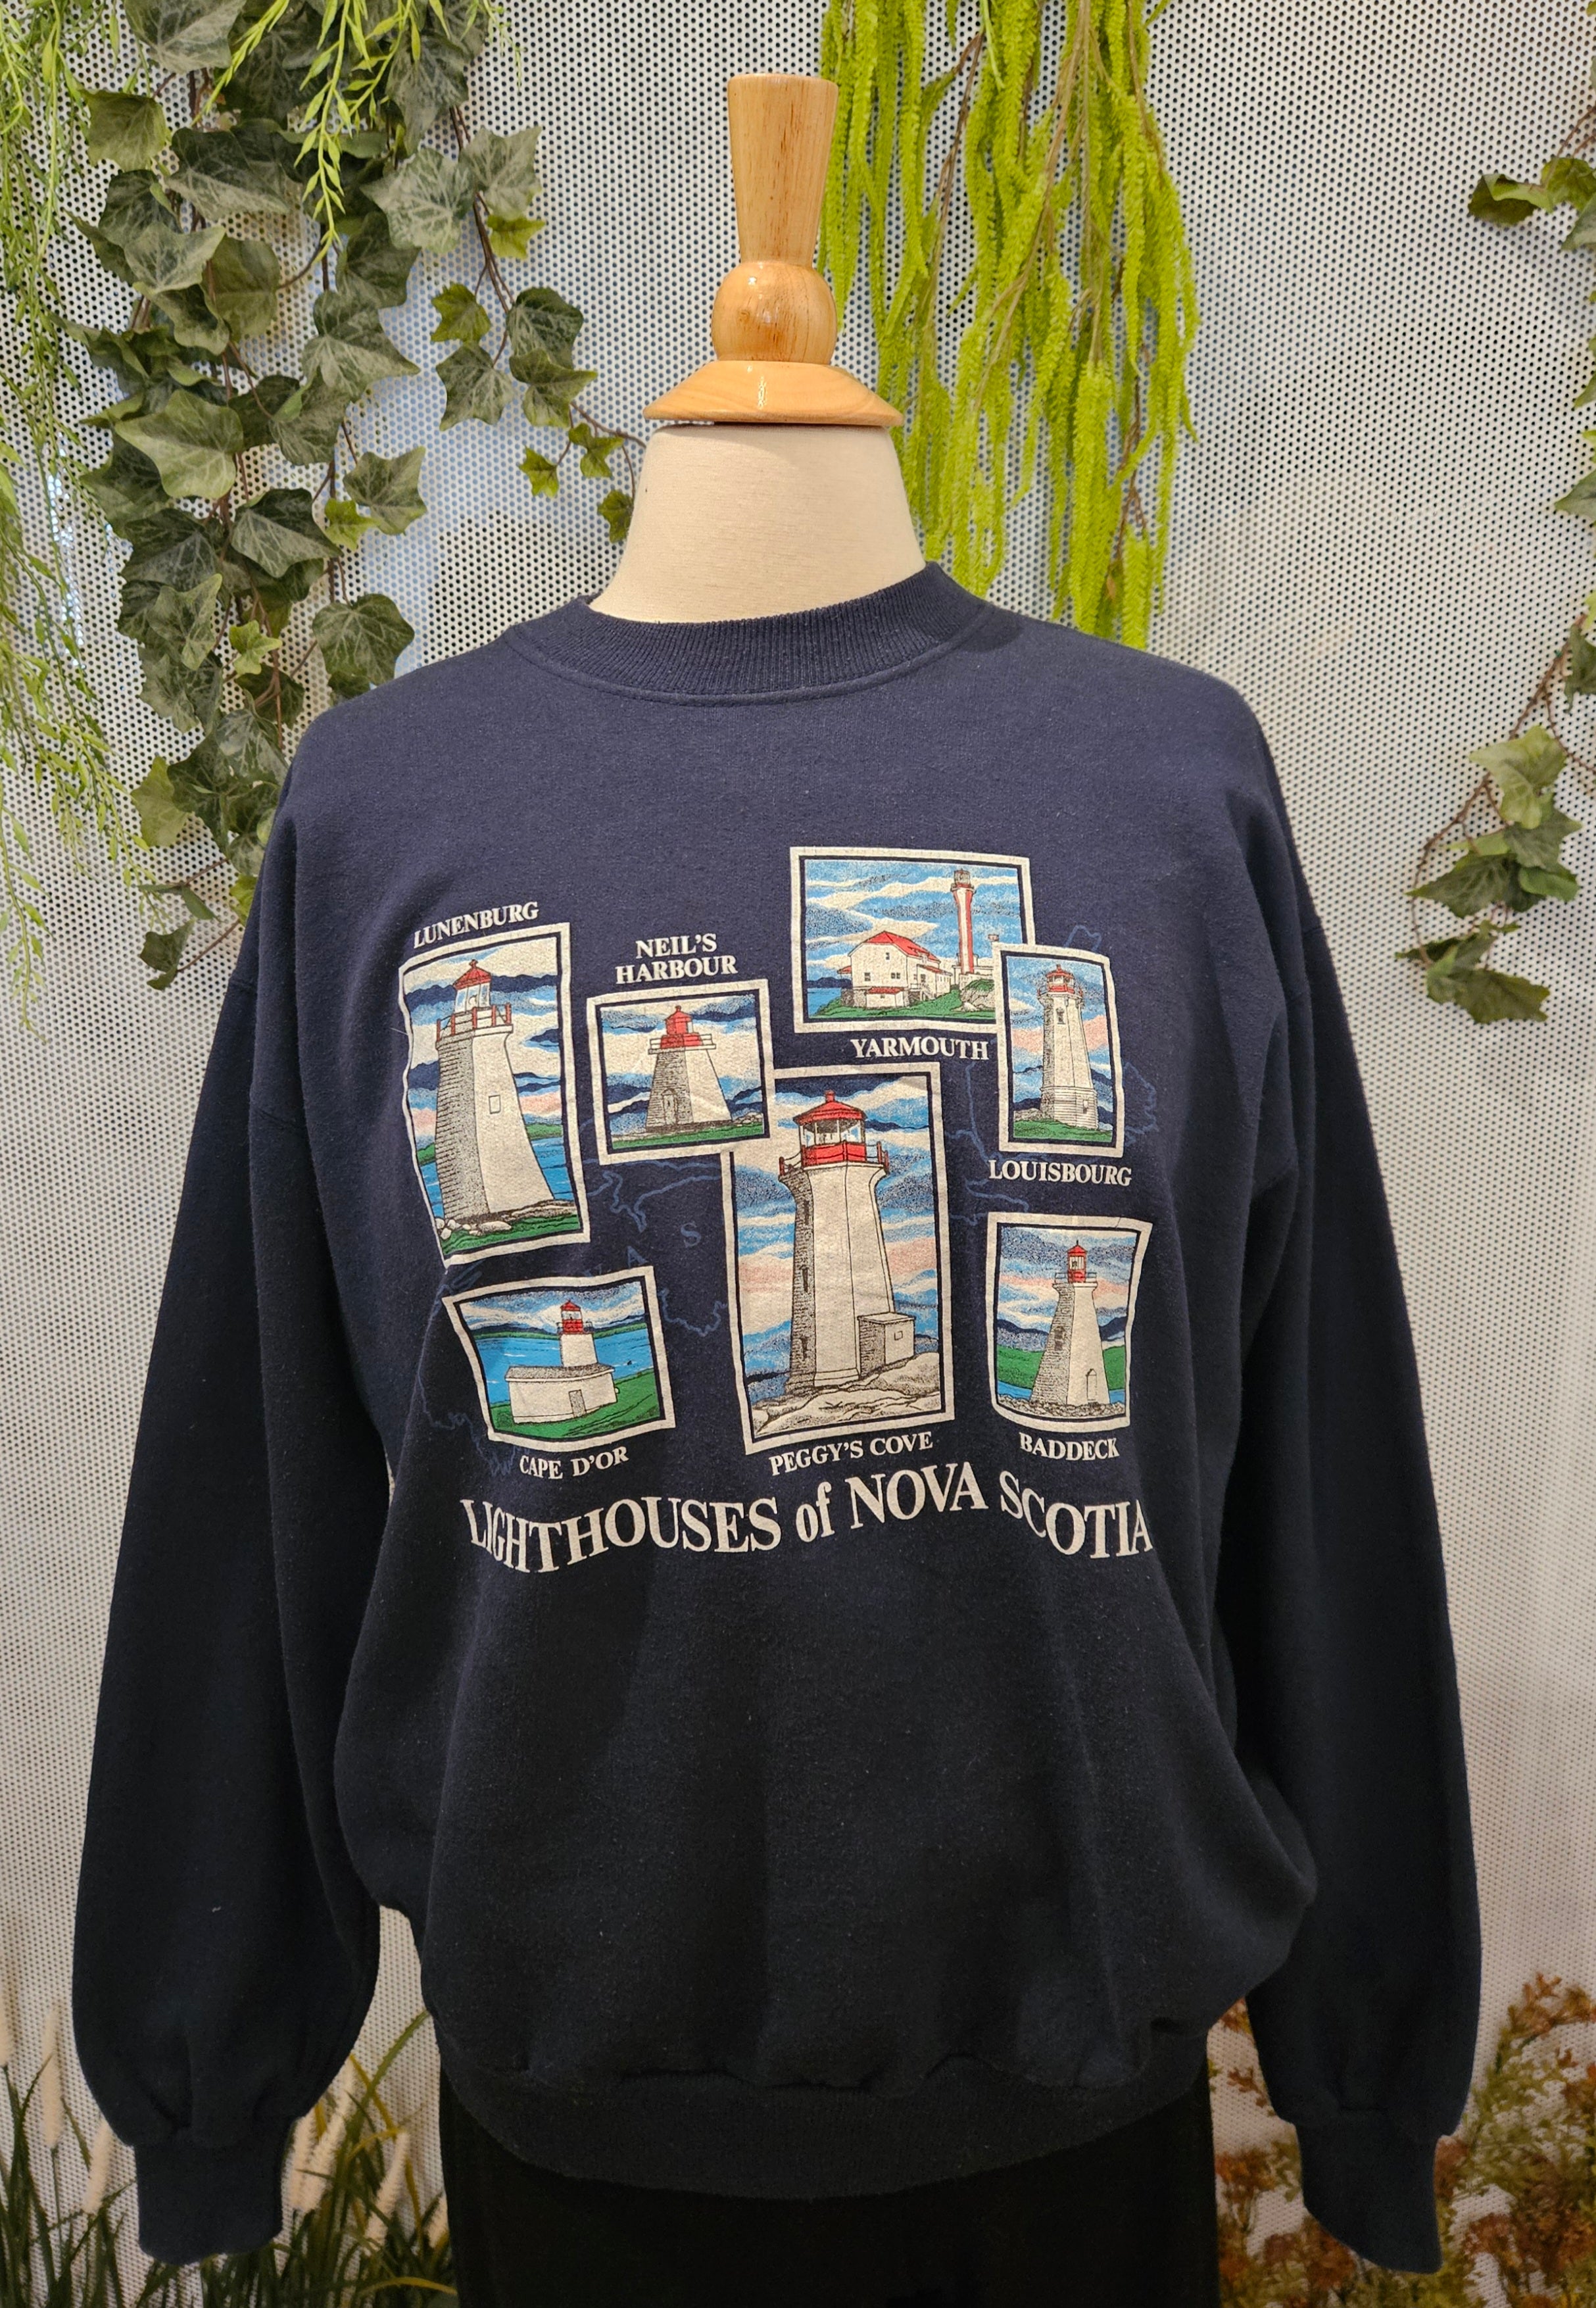 1980’s Lighthouses Sweatshirt